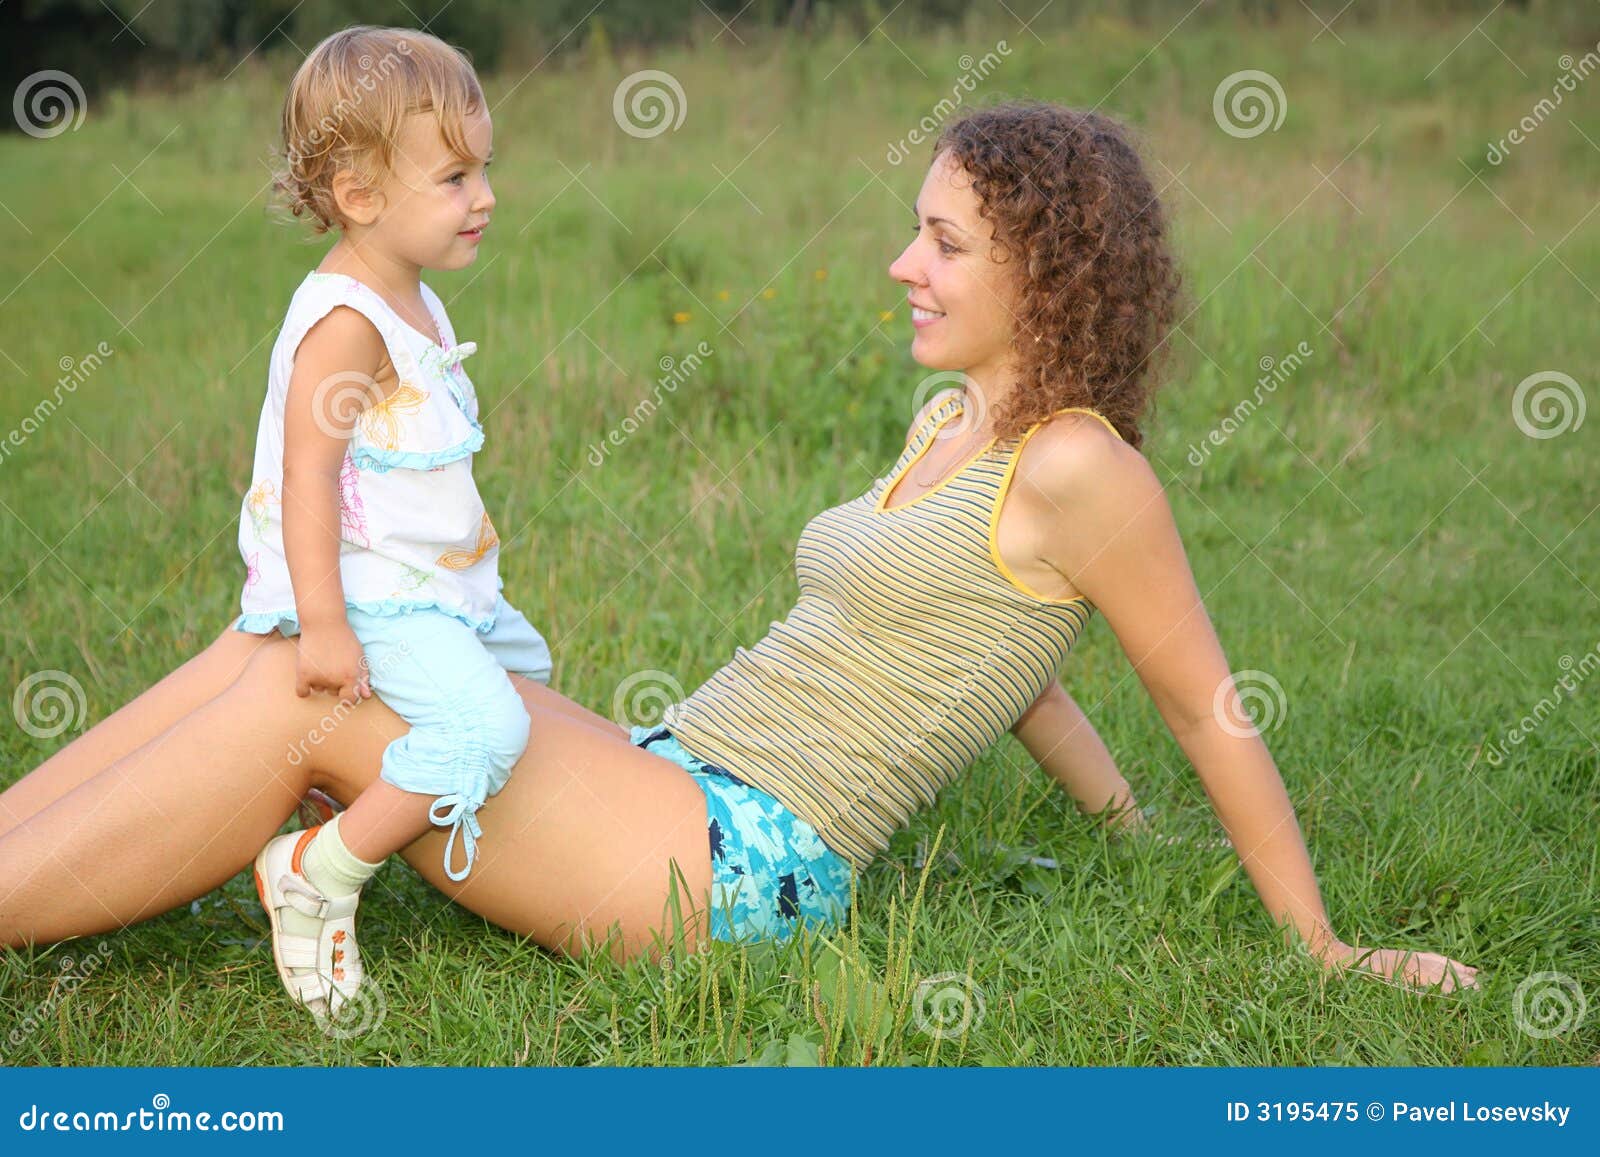 Сижу у мамы на коленях. Мама с дочкой на коленках. Дочь на коленях мамы. Дочка лежит у мамы на коленях. Мать и дочь на коленях.